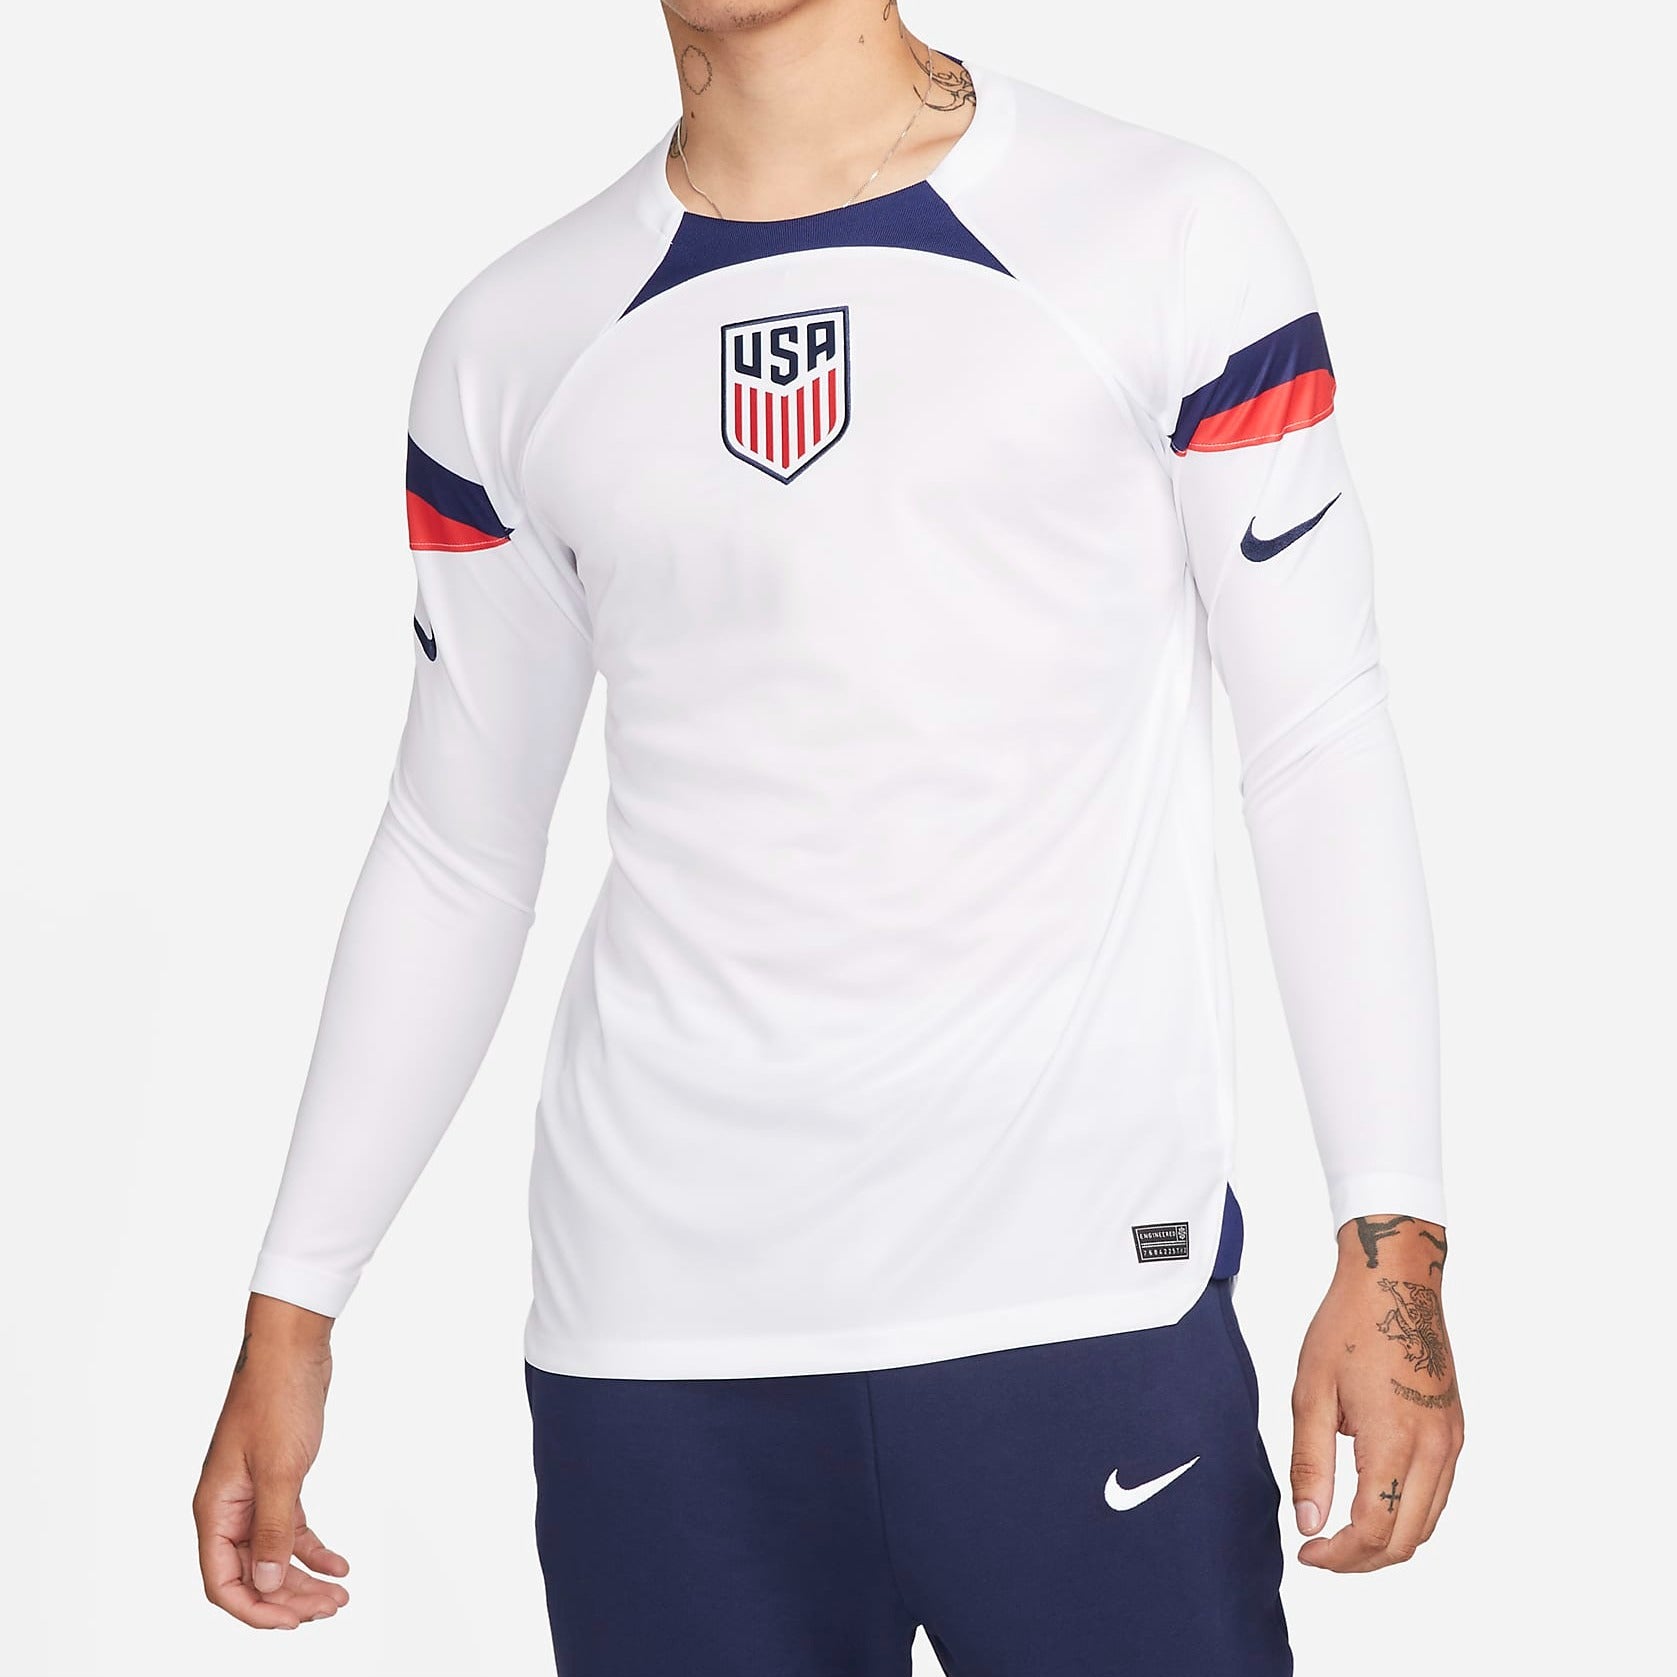 Artesano posición garrapata Nike USA Home Long Sleeve World Cup Jersey 2022 Men's